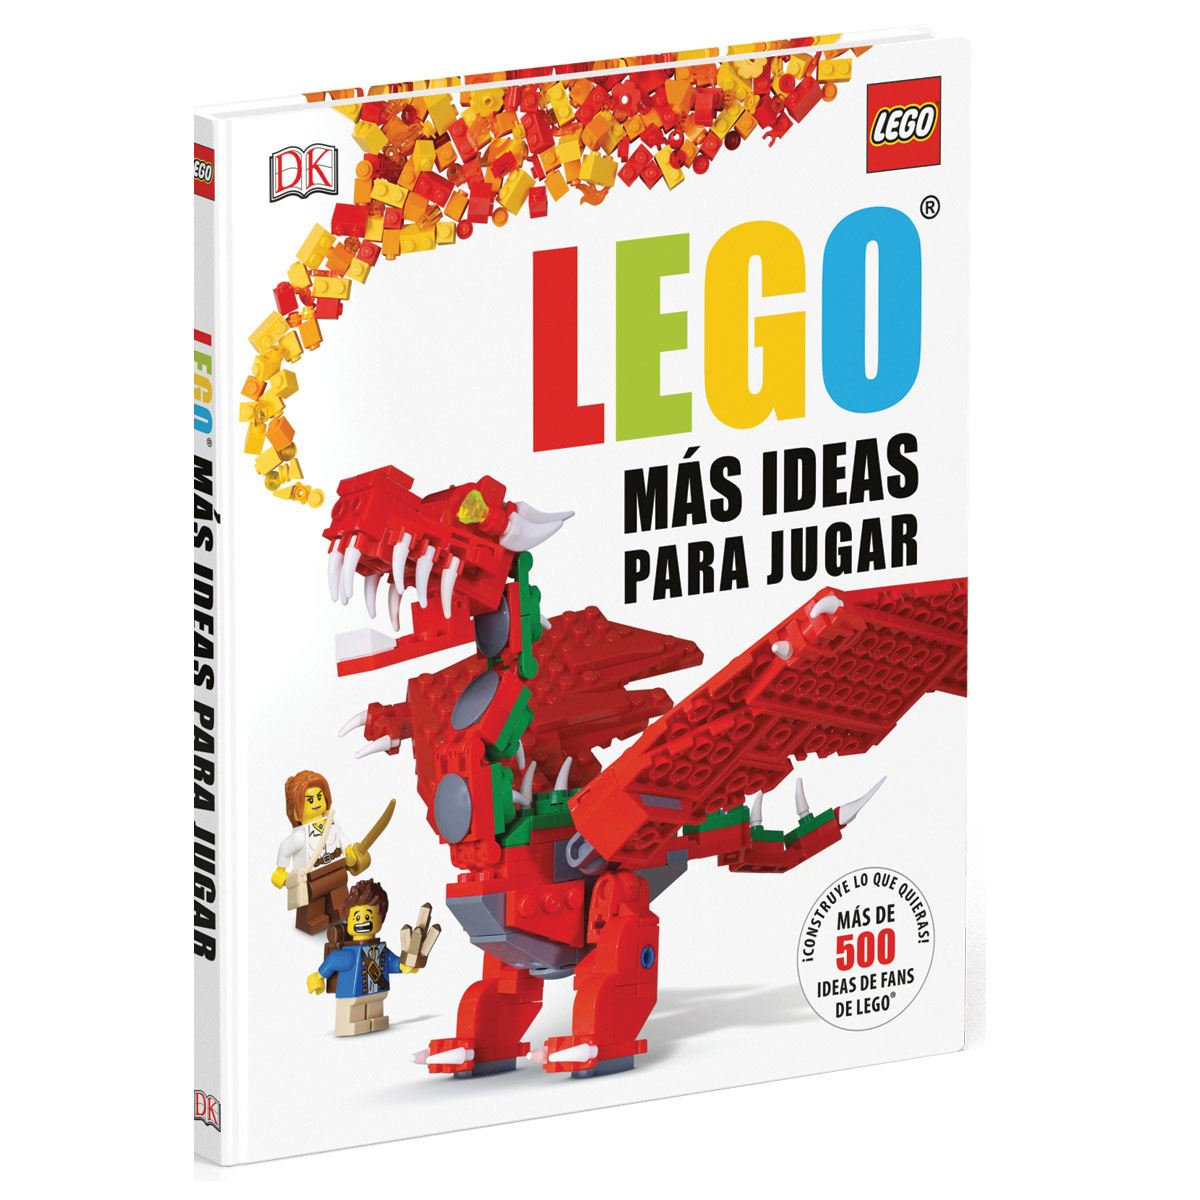 LEGO Más ideas para jugar